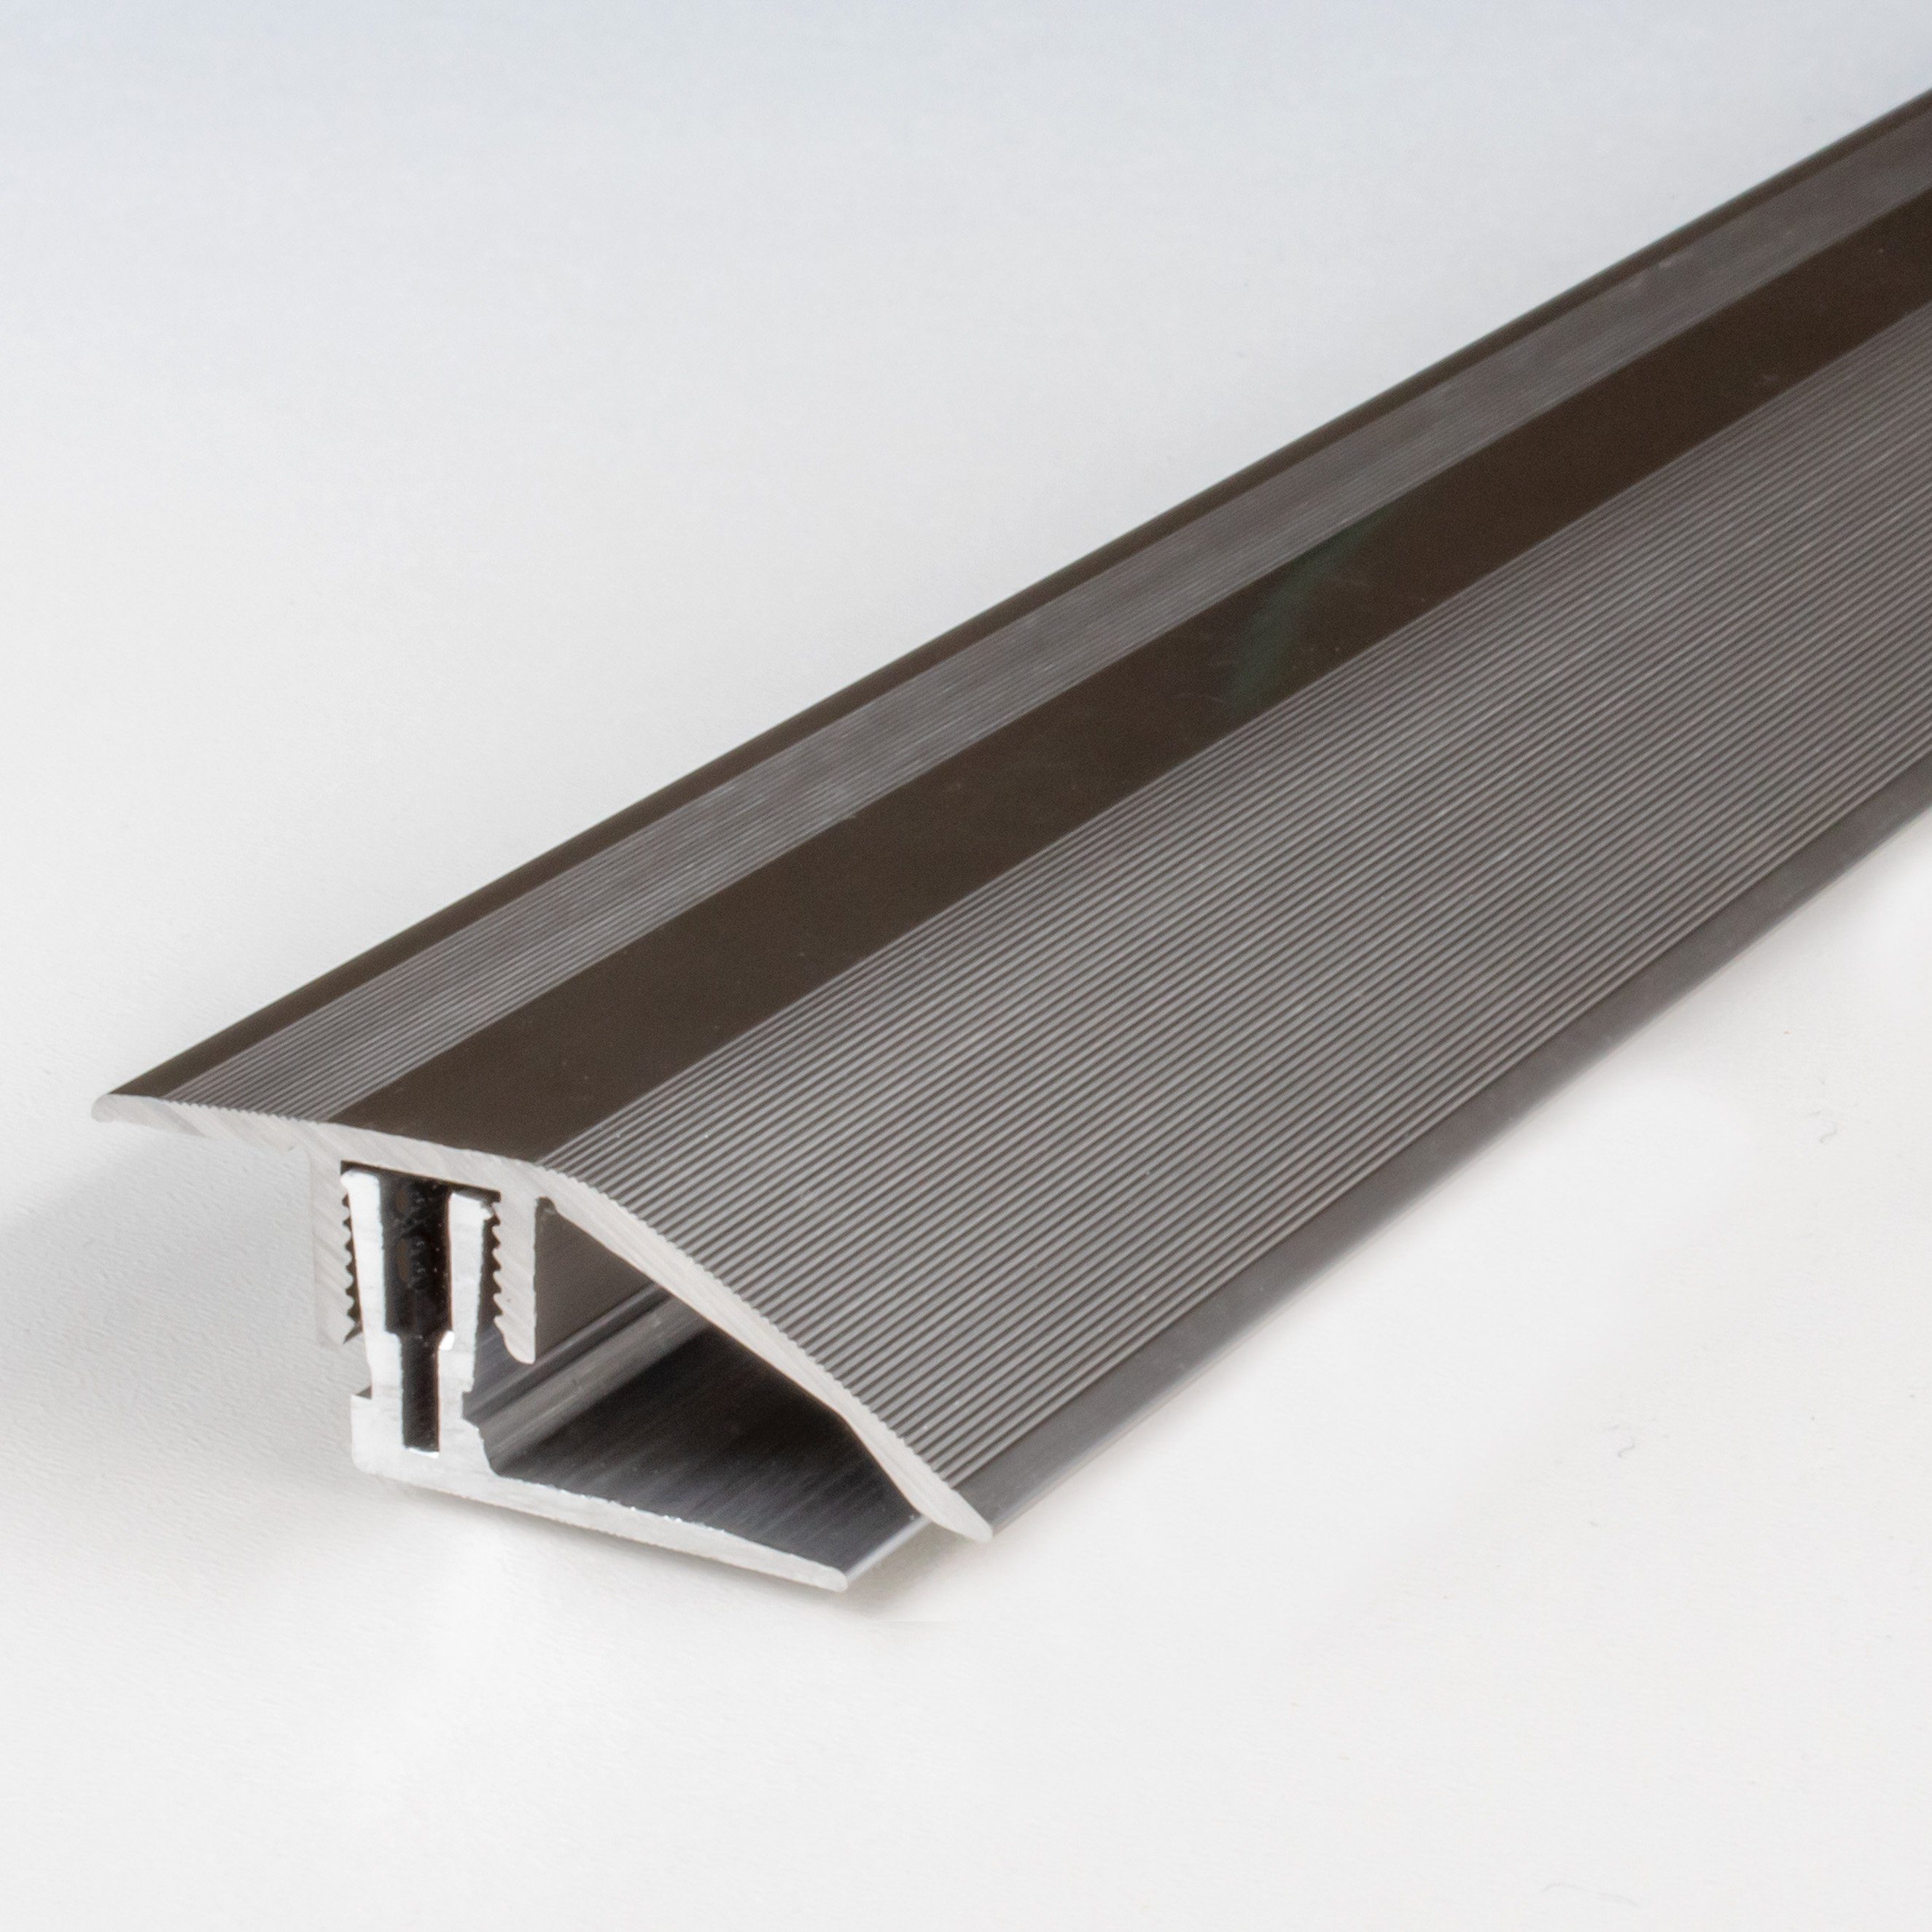 PROVISTON Anpassprofil Aluminium, 41 x 11 - 15 x 1000 mm, Edelstahloptik, Anpassungsprofil